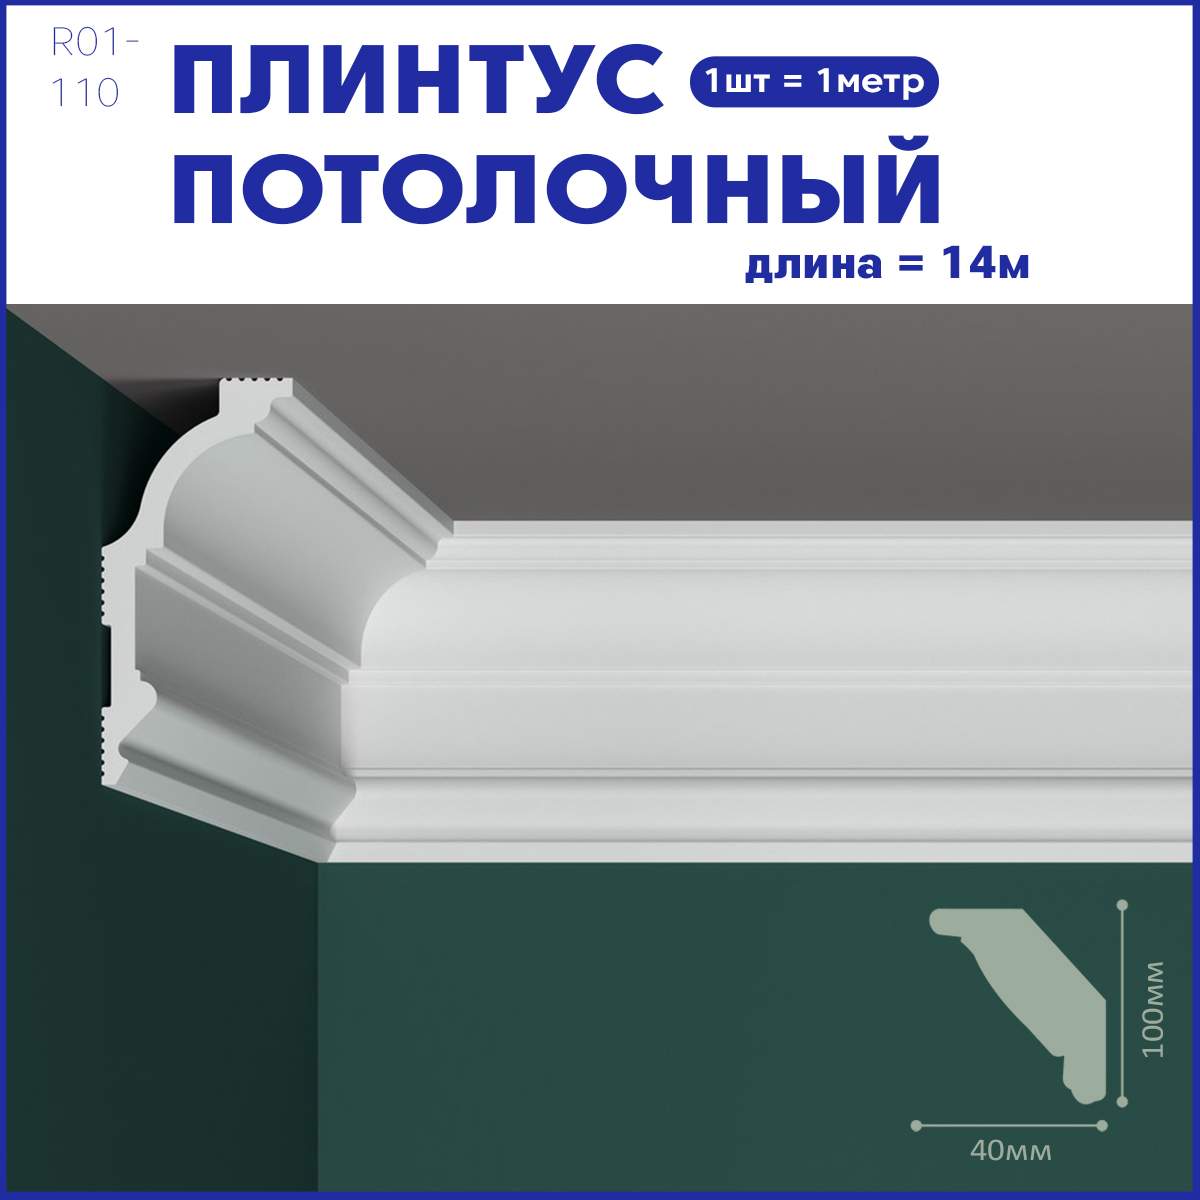 фото Плинтус потолочный r01-110, комплект 14 шт. x 1м, 14м nobrand